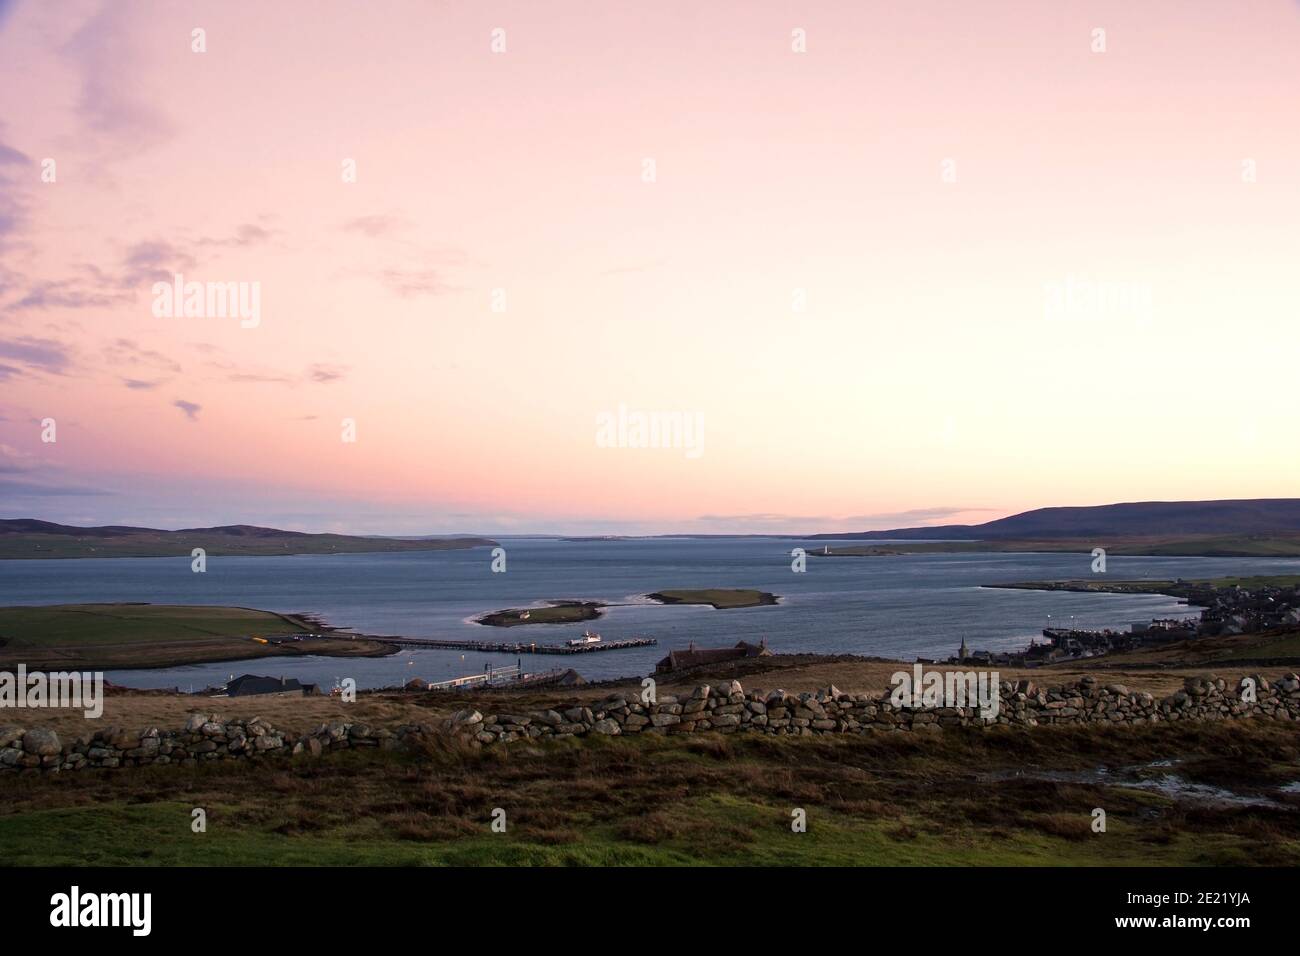 Vista desde la cima de la colina de dos pequeñas islas y.. puerto en las islas Orkney con cielo despejado Foto de stock